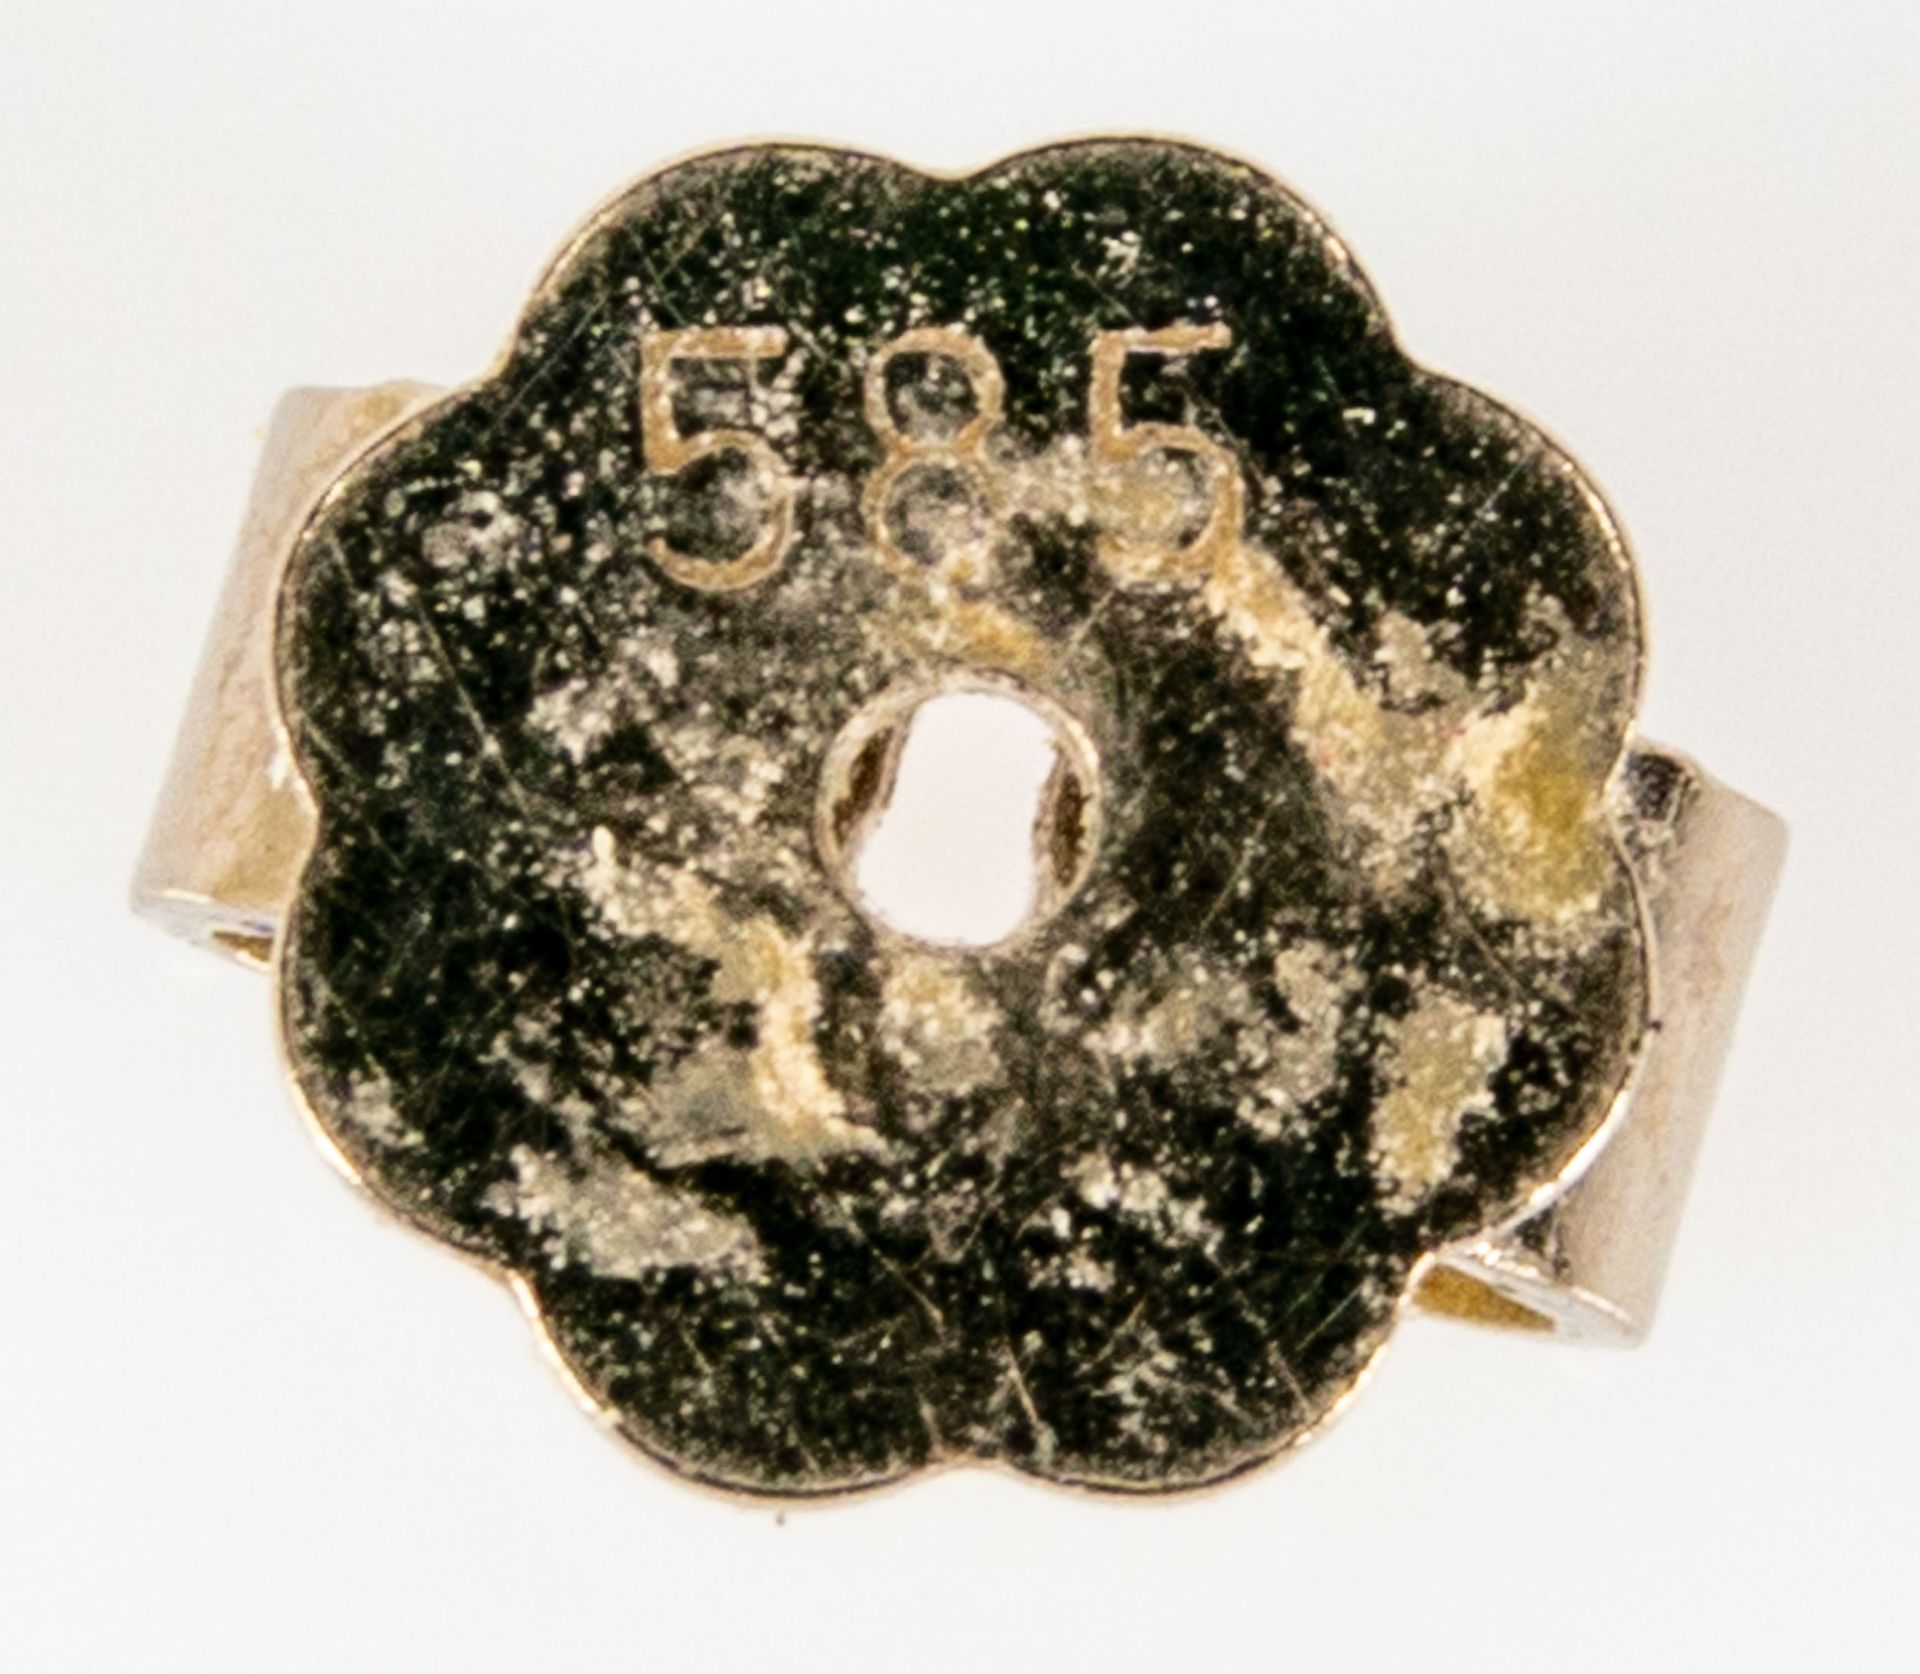 Einzelner 585er Weißgold- Ohrstecker mit Diamantbesatz im Brillantschliff. Schöner, getragener Erha - Image 6 of 6